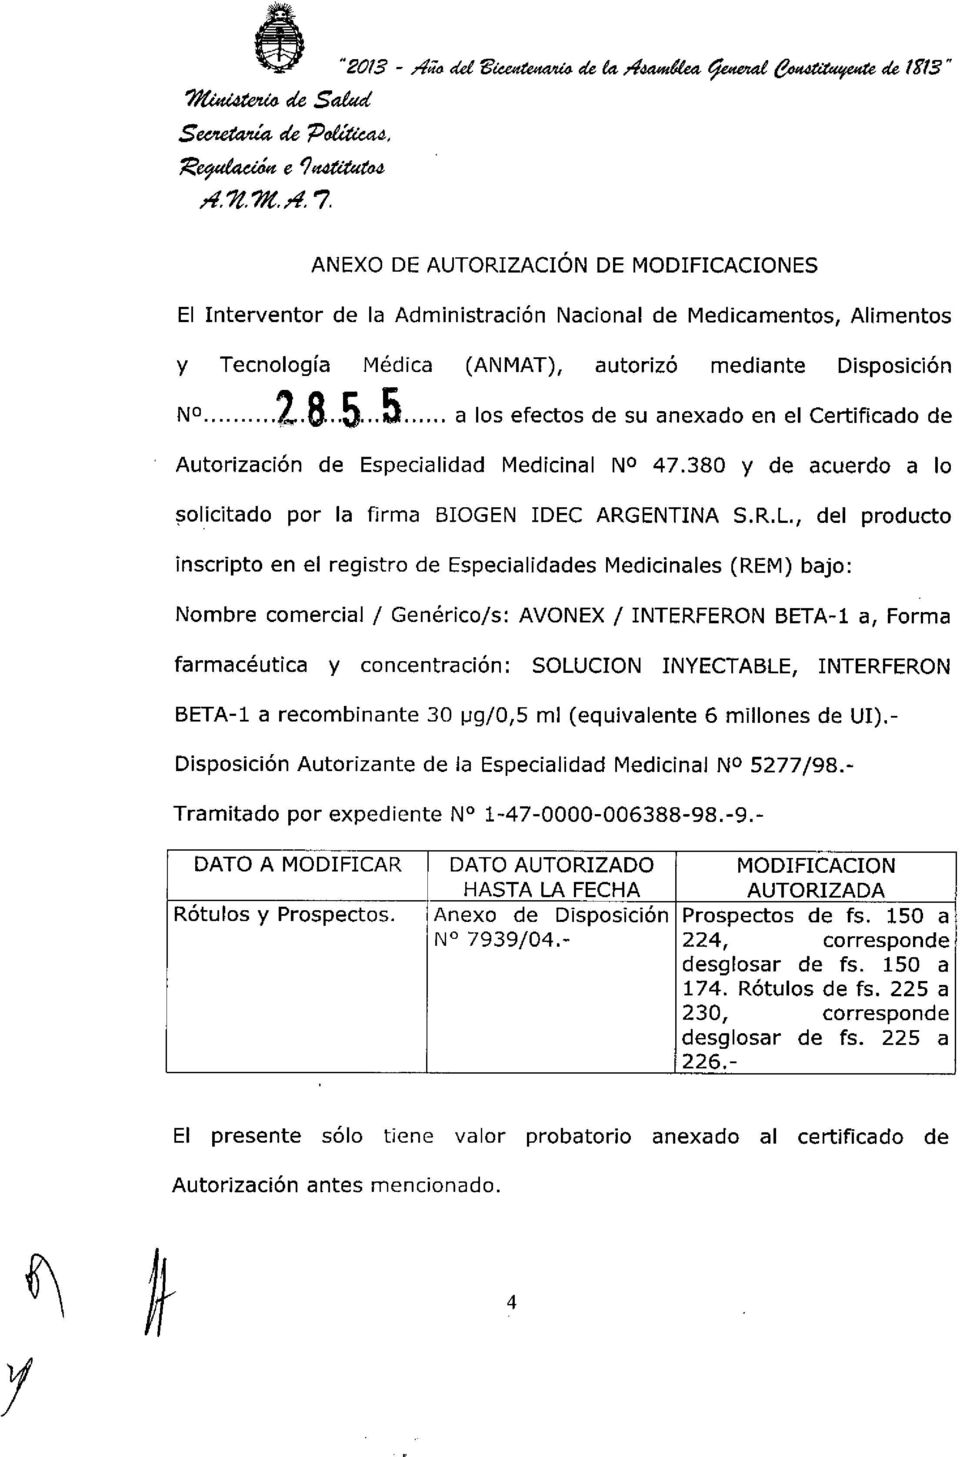 Disposición No 2.8..5 5 a los efectos de su anexado en el Certificado de Autorización de Especialidad Medicinal NO 47.380 Y de acuerdo a lo solicitado por la firma BIOGEN IDEC ARGENTINA S.R.L.